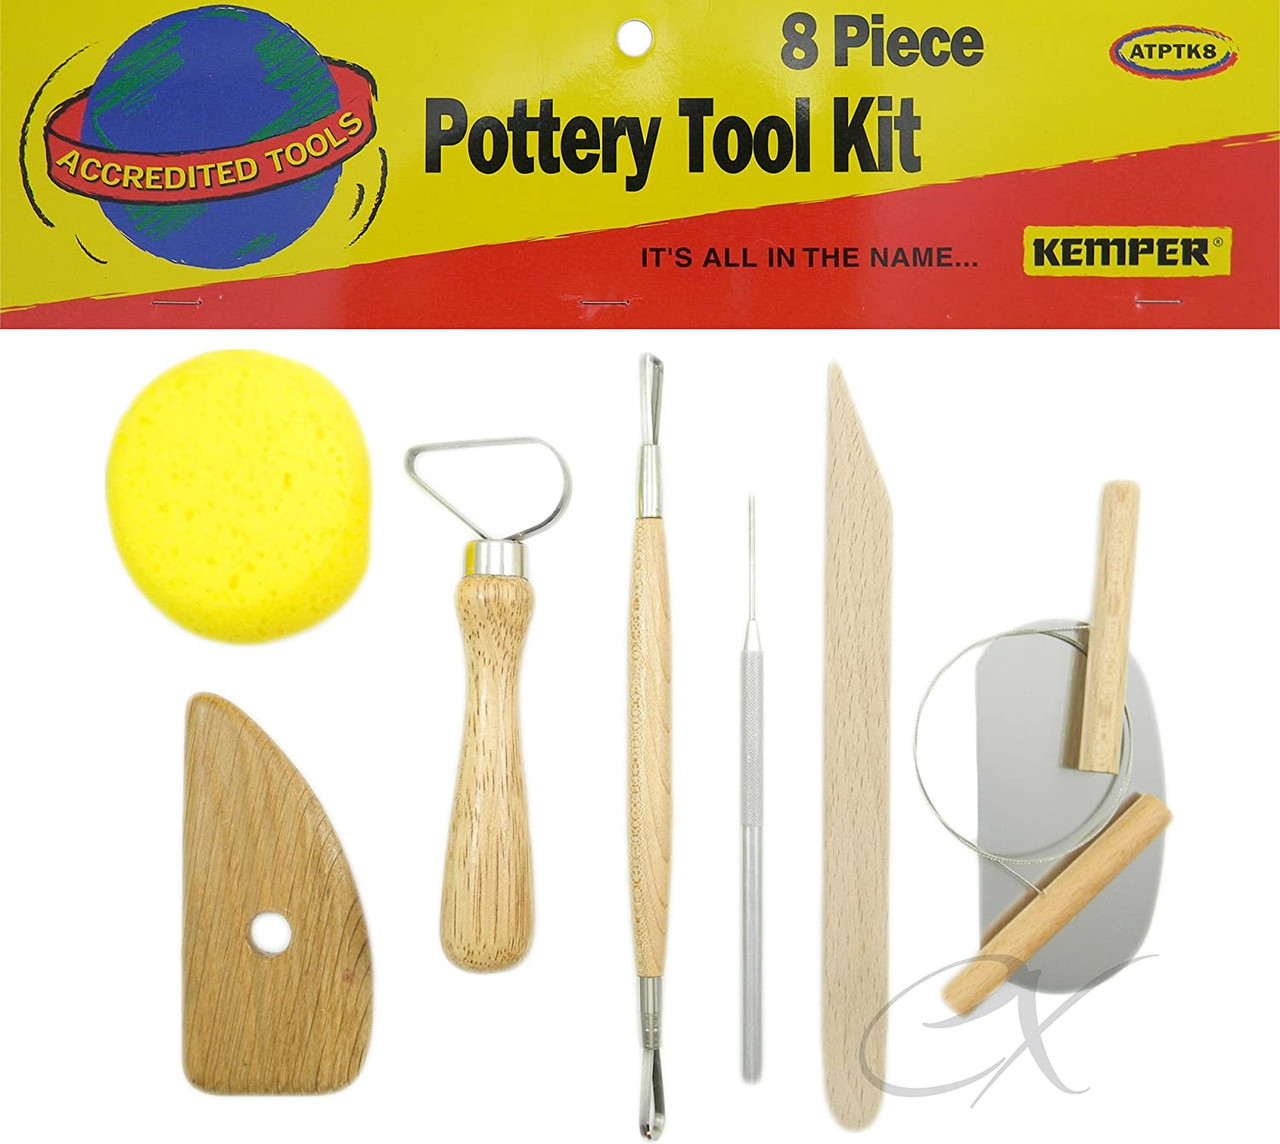 Kemper PTK Pottery Tool Kit